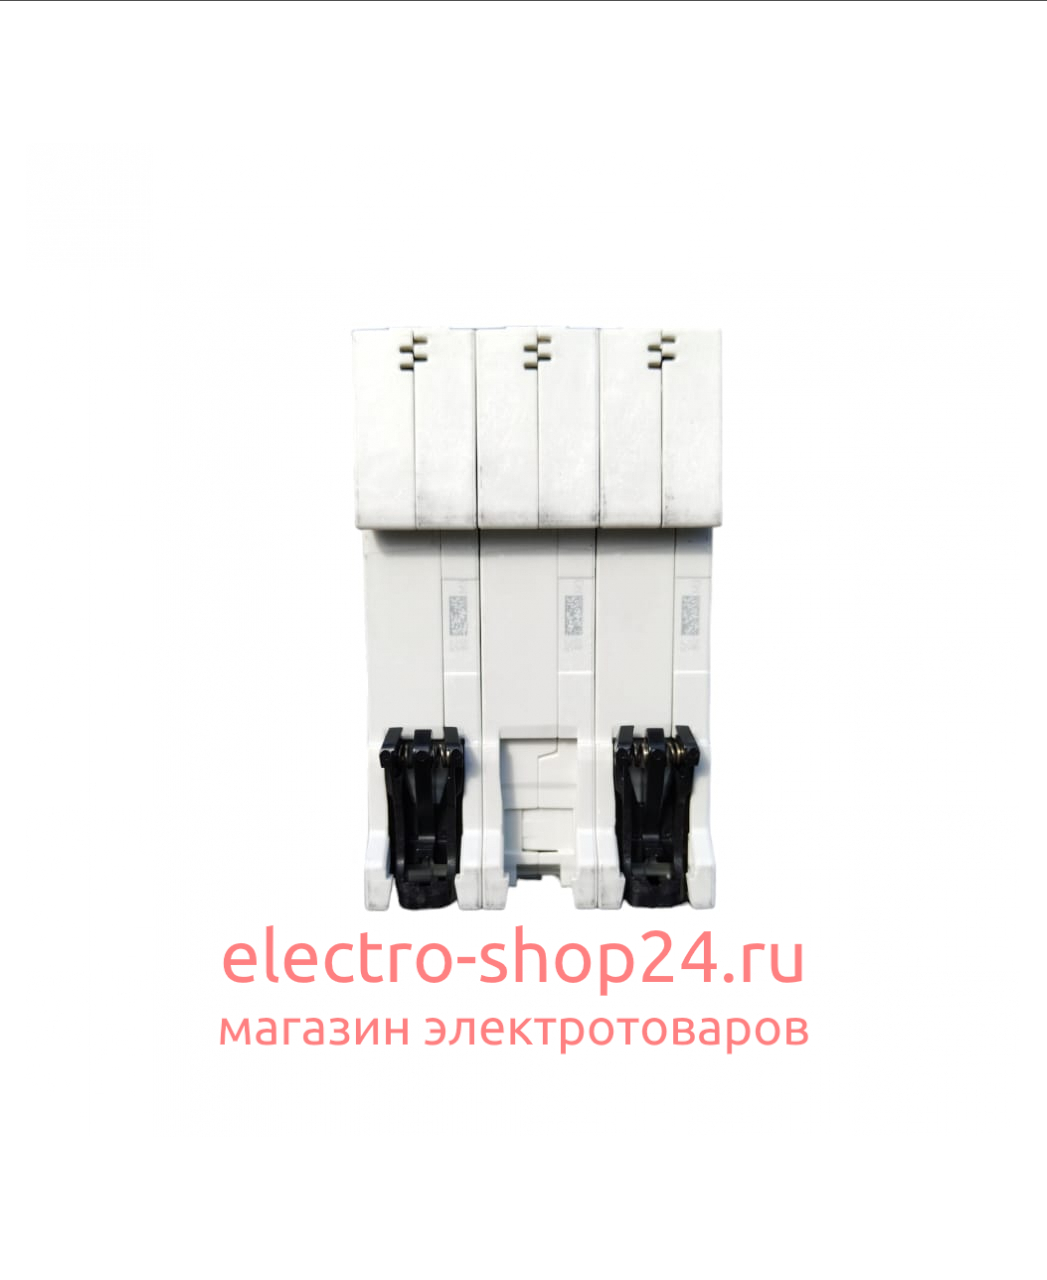 S203 C16 Автоматический выключатель 3-полюсный 16А 6кА (хар-ка C) ABB 2CDS253001R0164 2CDS253001R0164 - магазин электротехники Electroshop